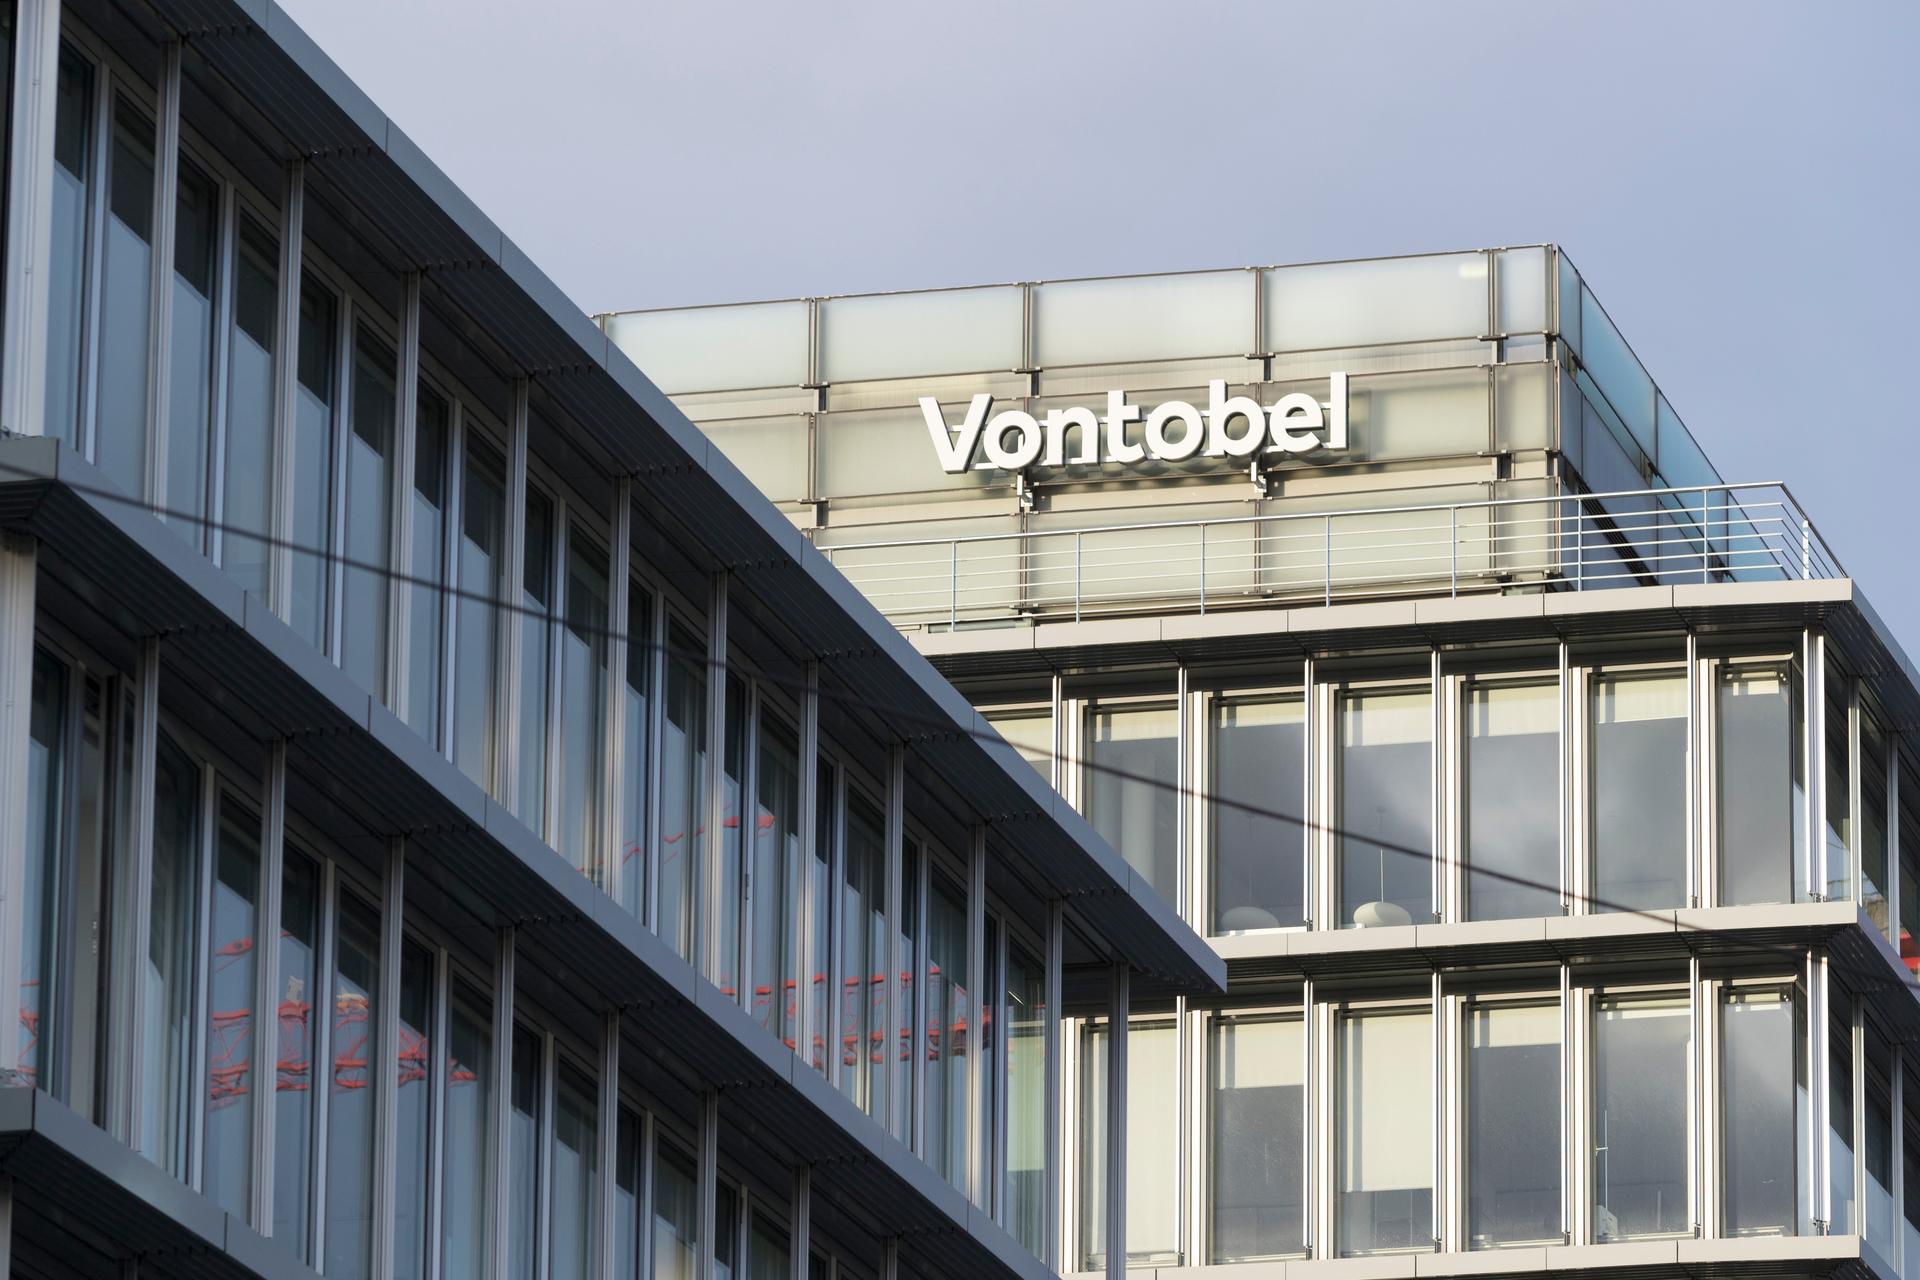 The headquarters of Bank Vontobel in Zurich, Switzerland.